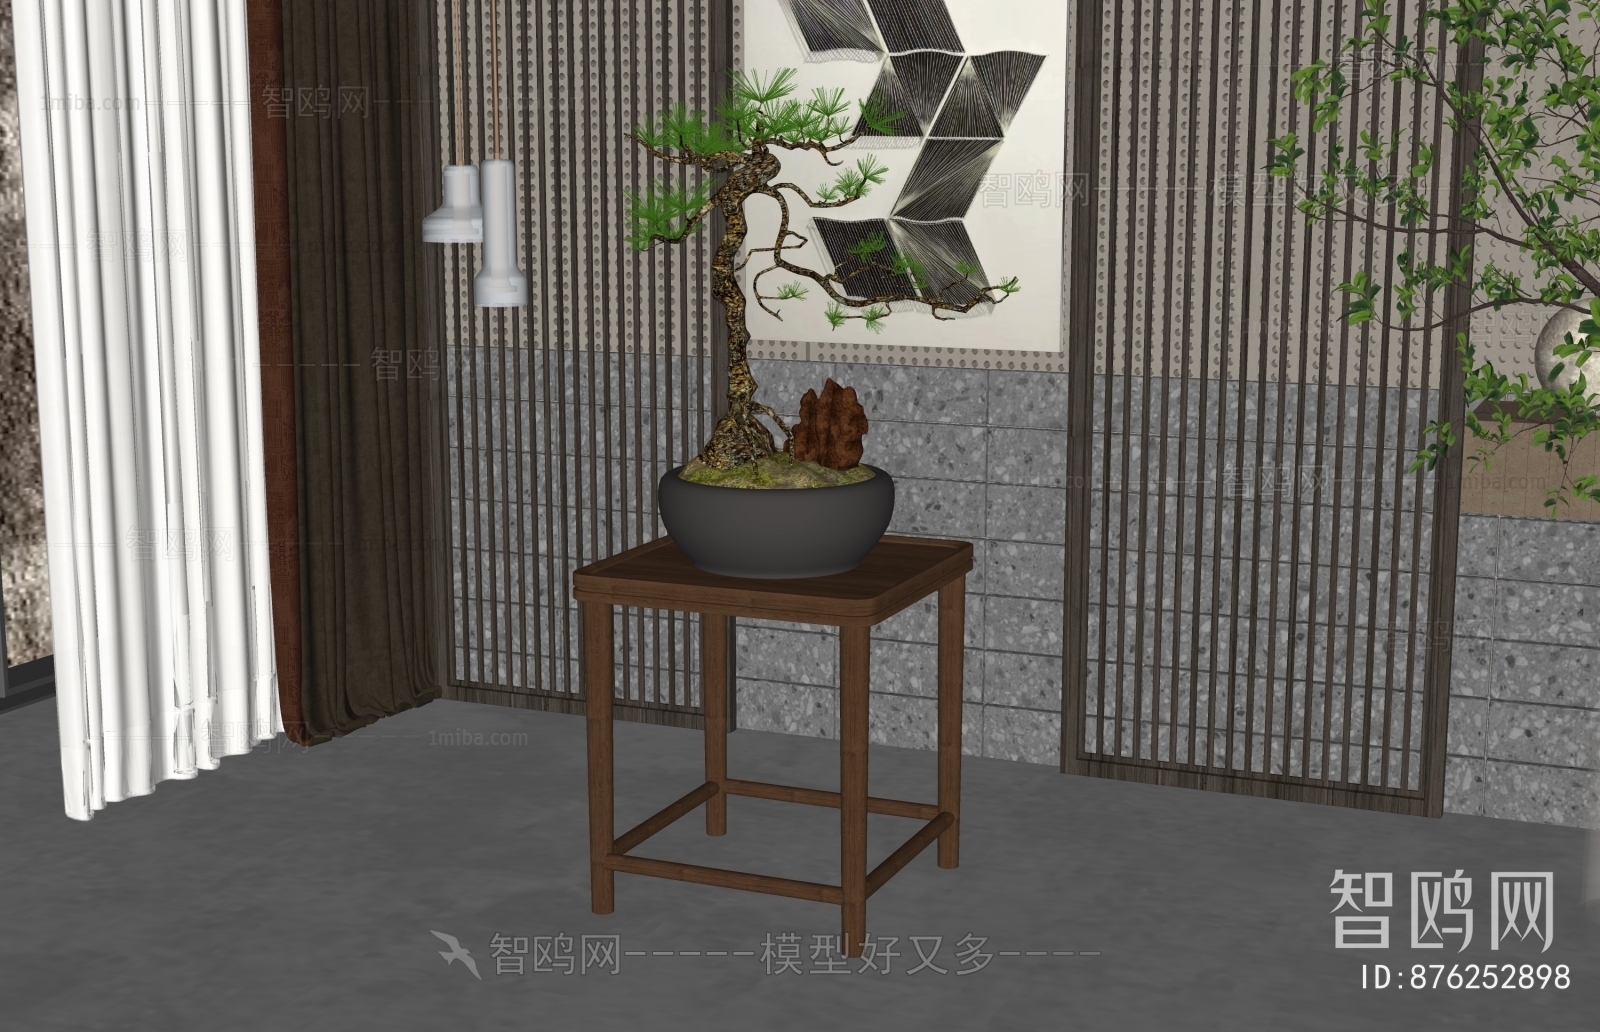 New Chinese Style Bonsai